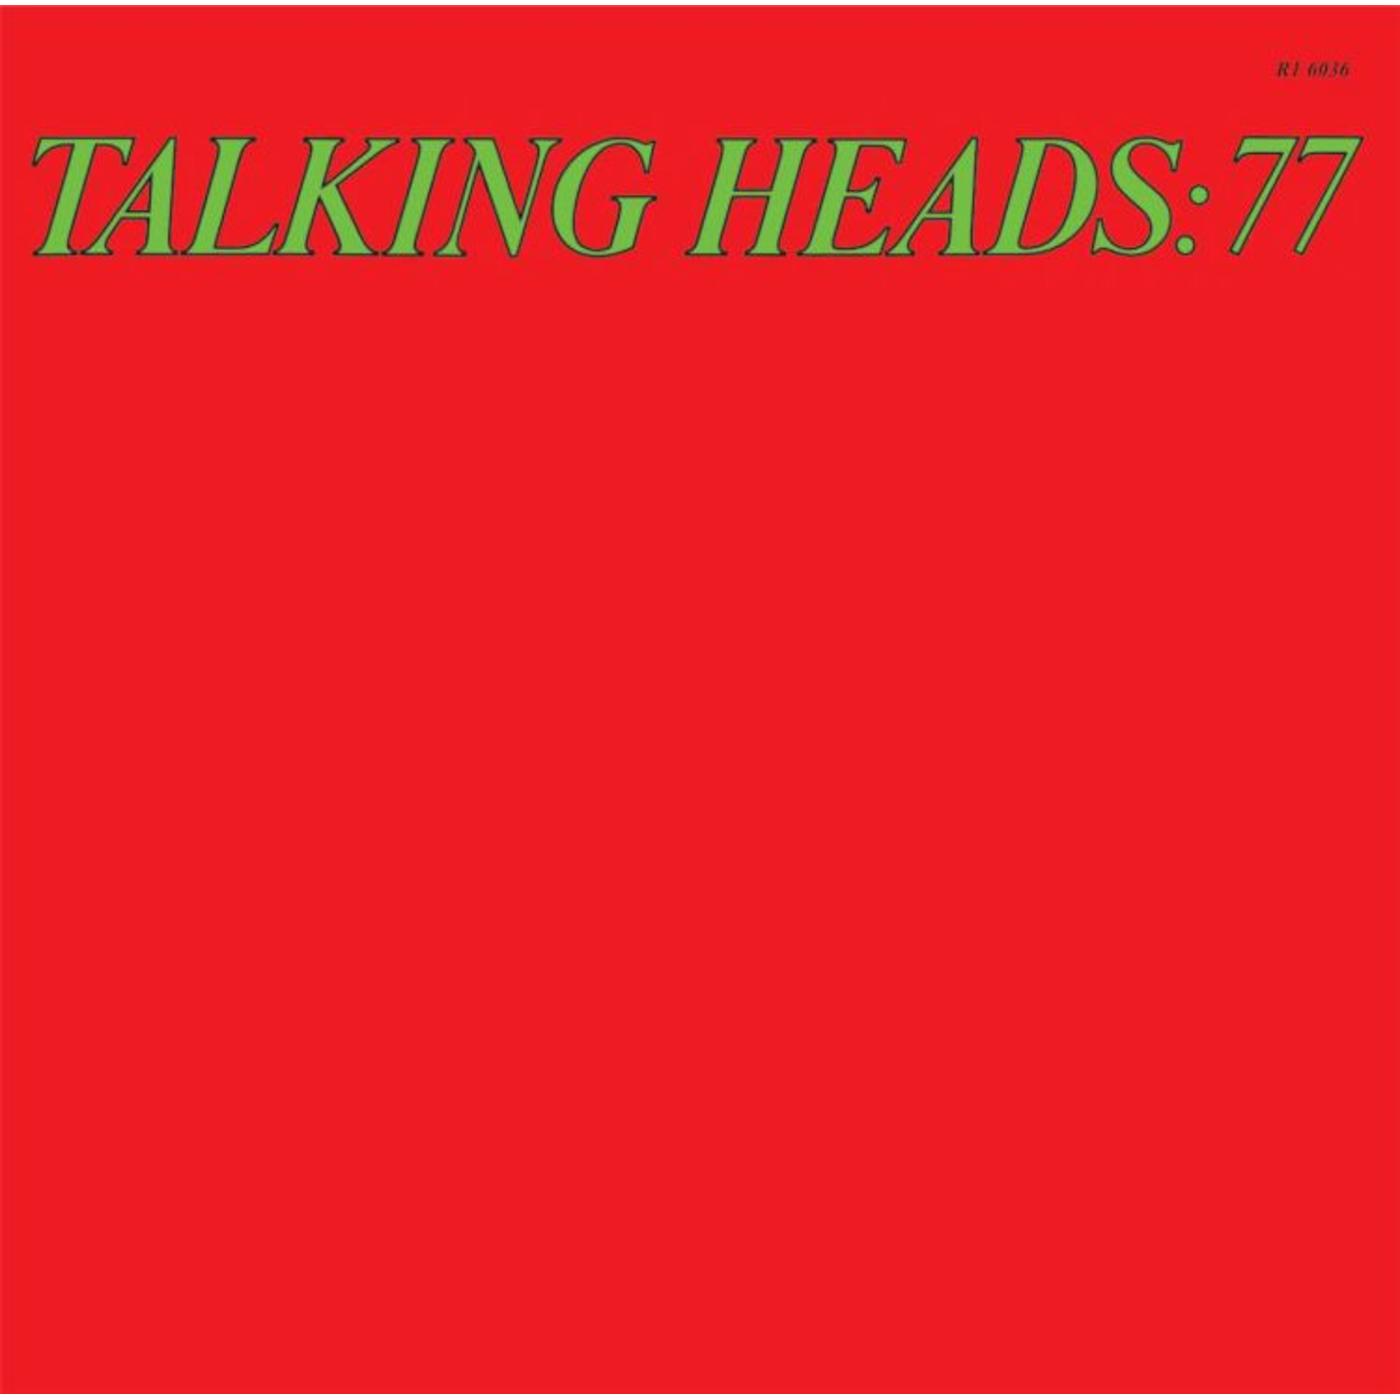 TALKING HEADS - TALKING HEADS: 77 - LP DE VINILO